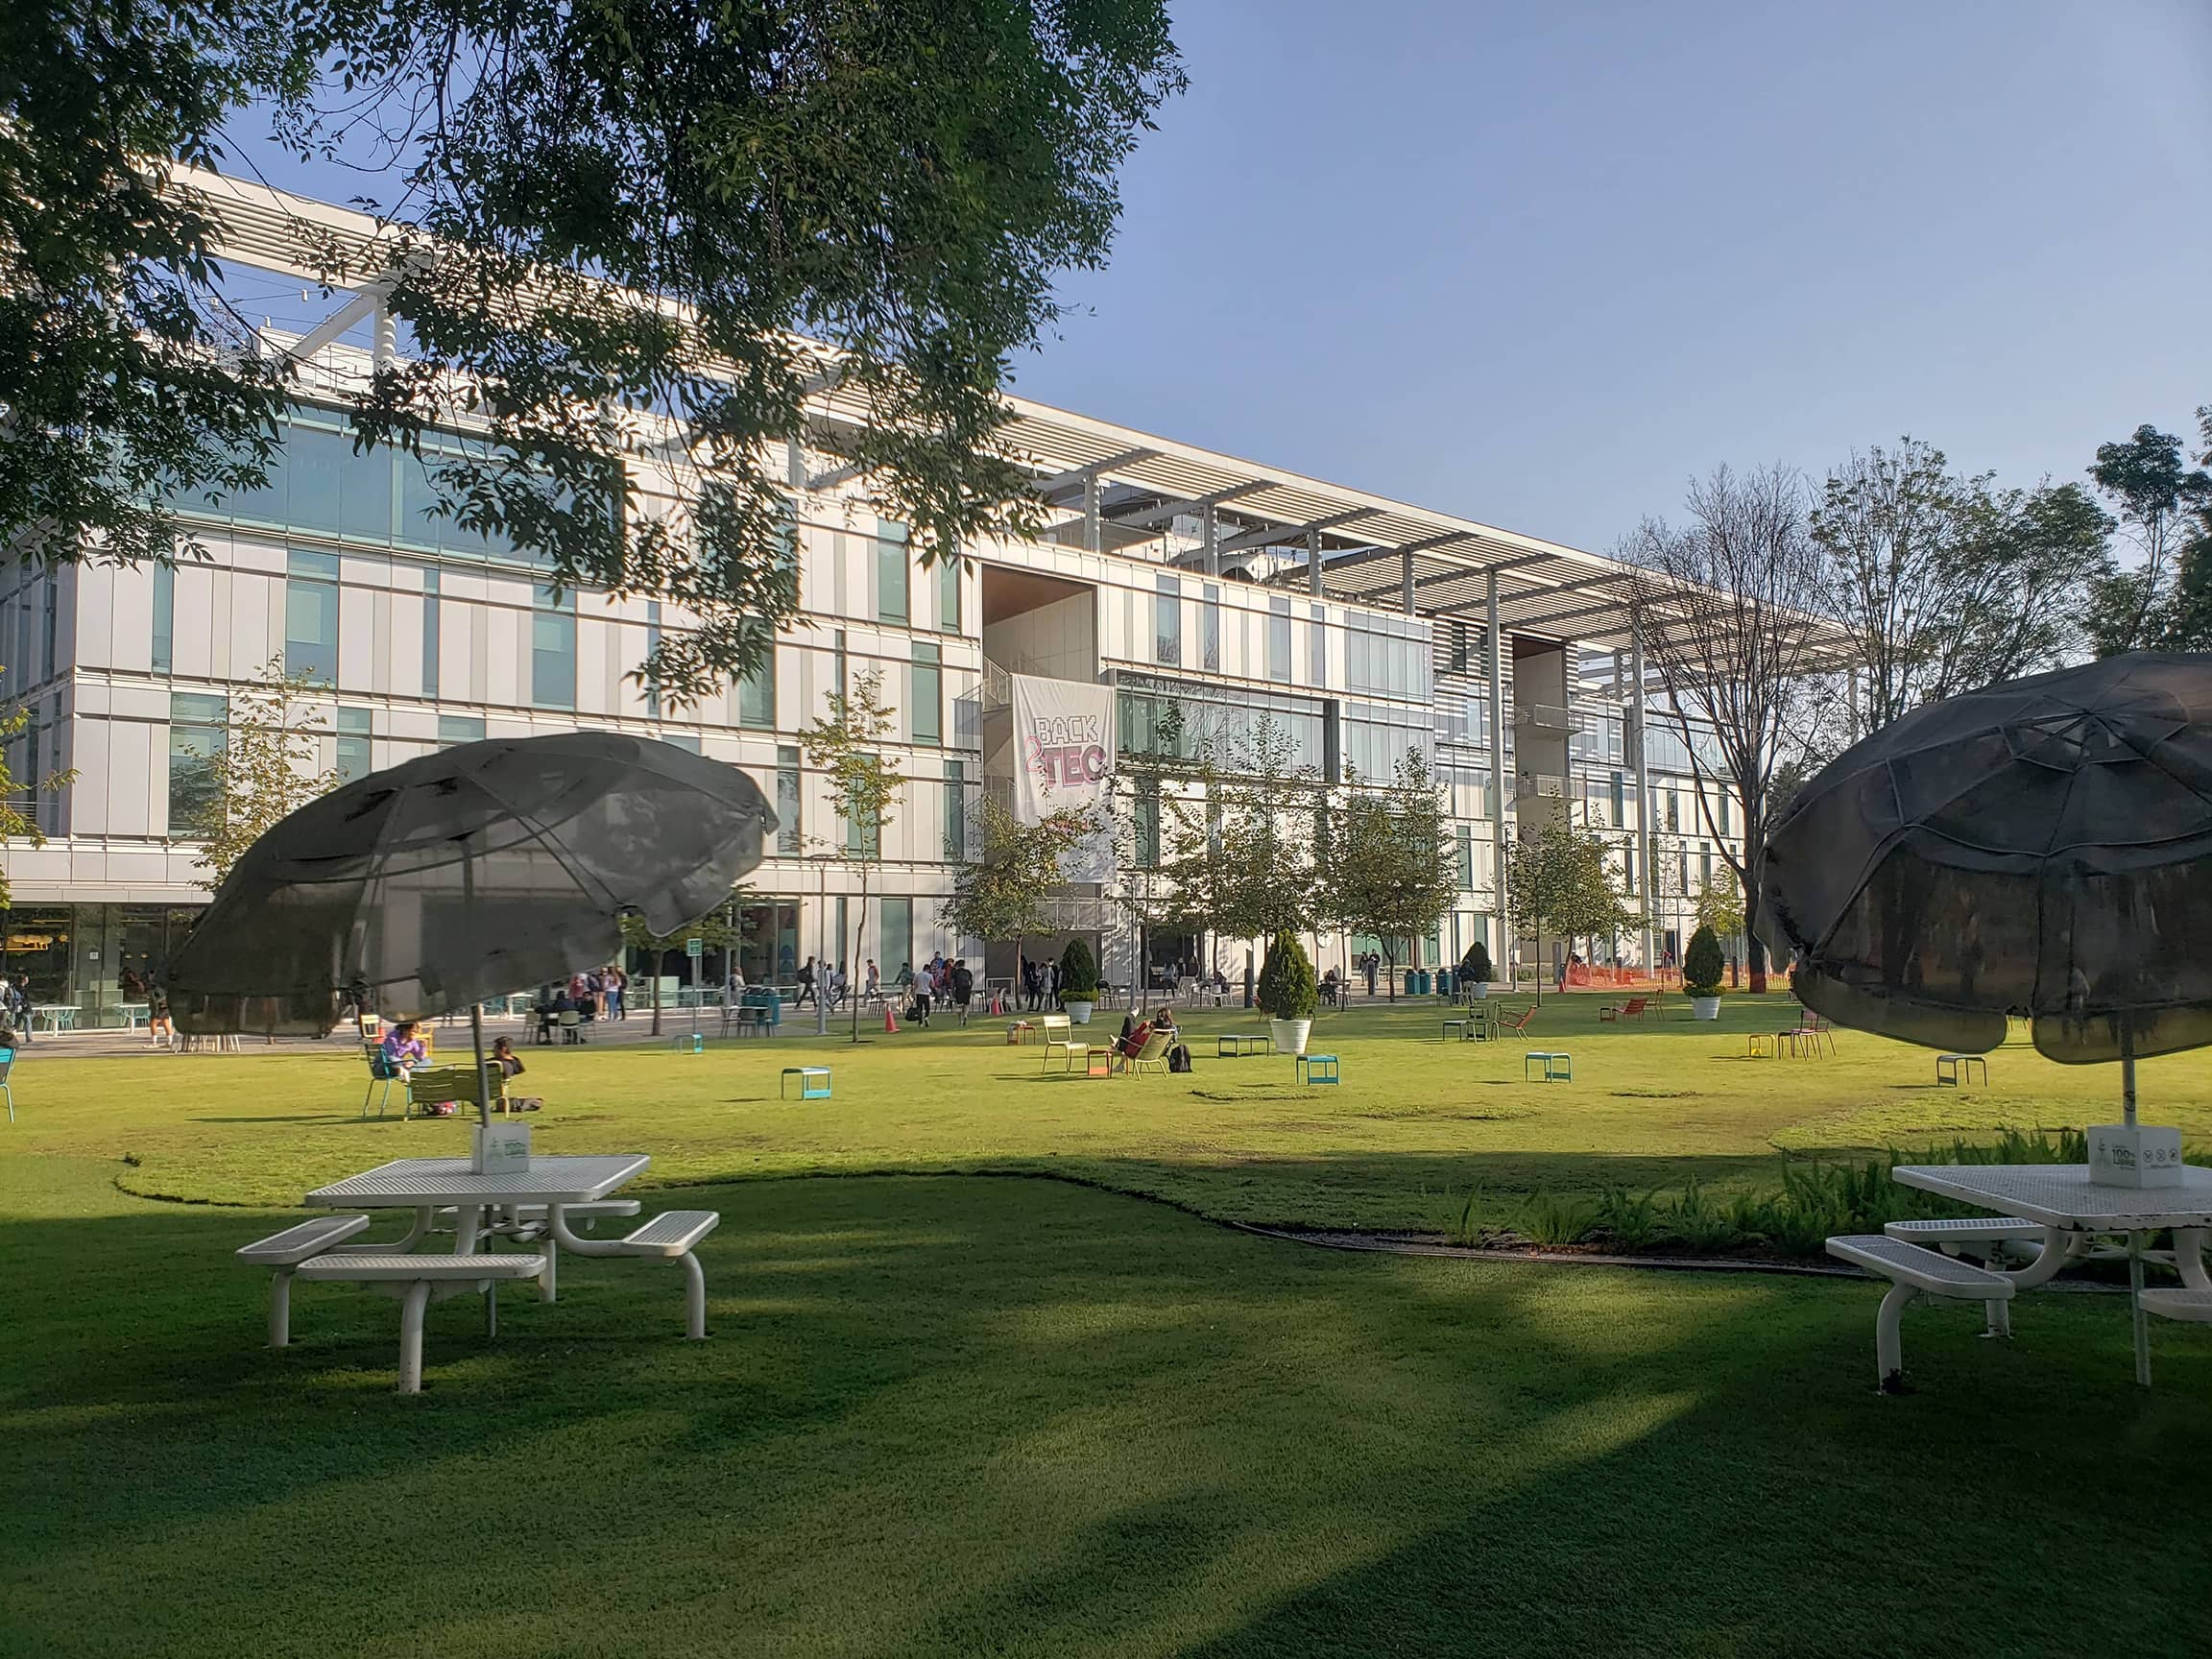 Campus Tec de Monterrey in Mexico City